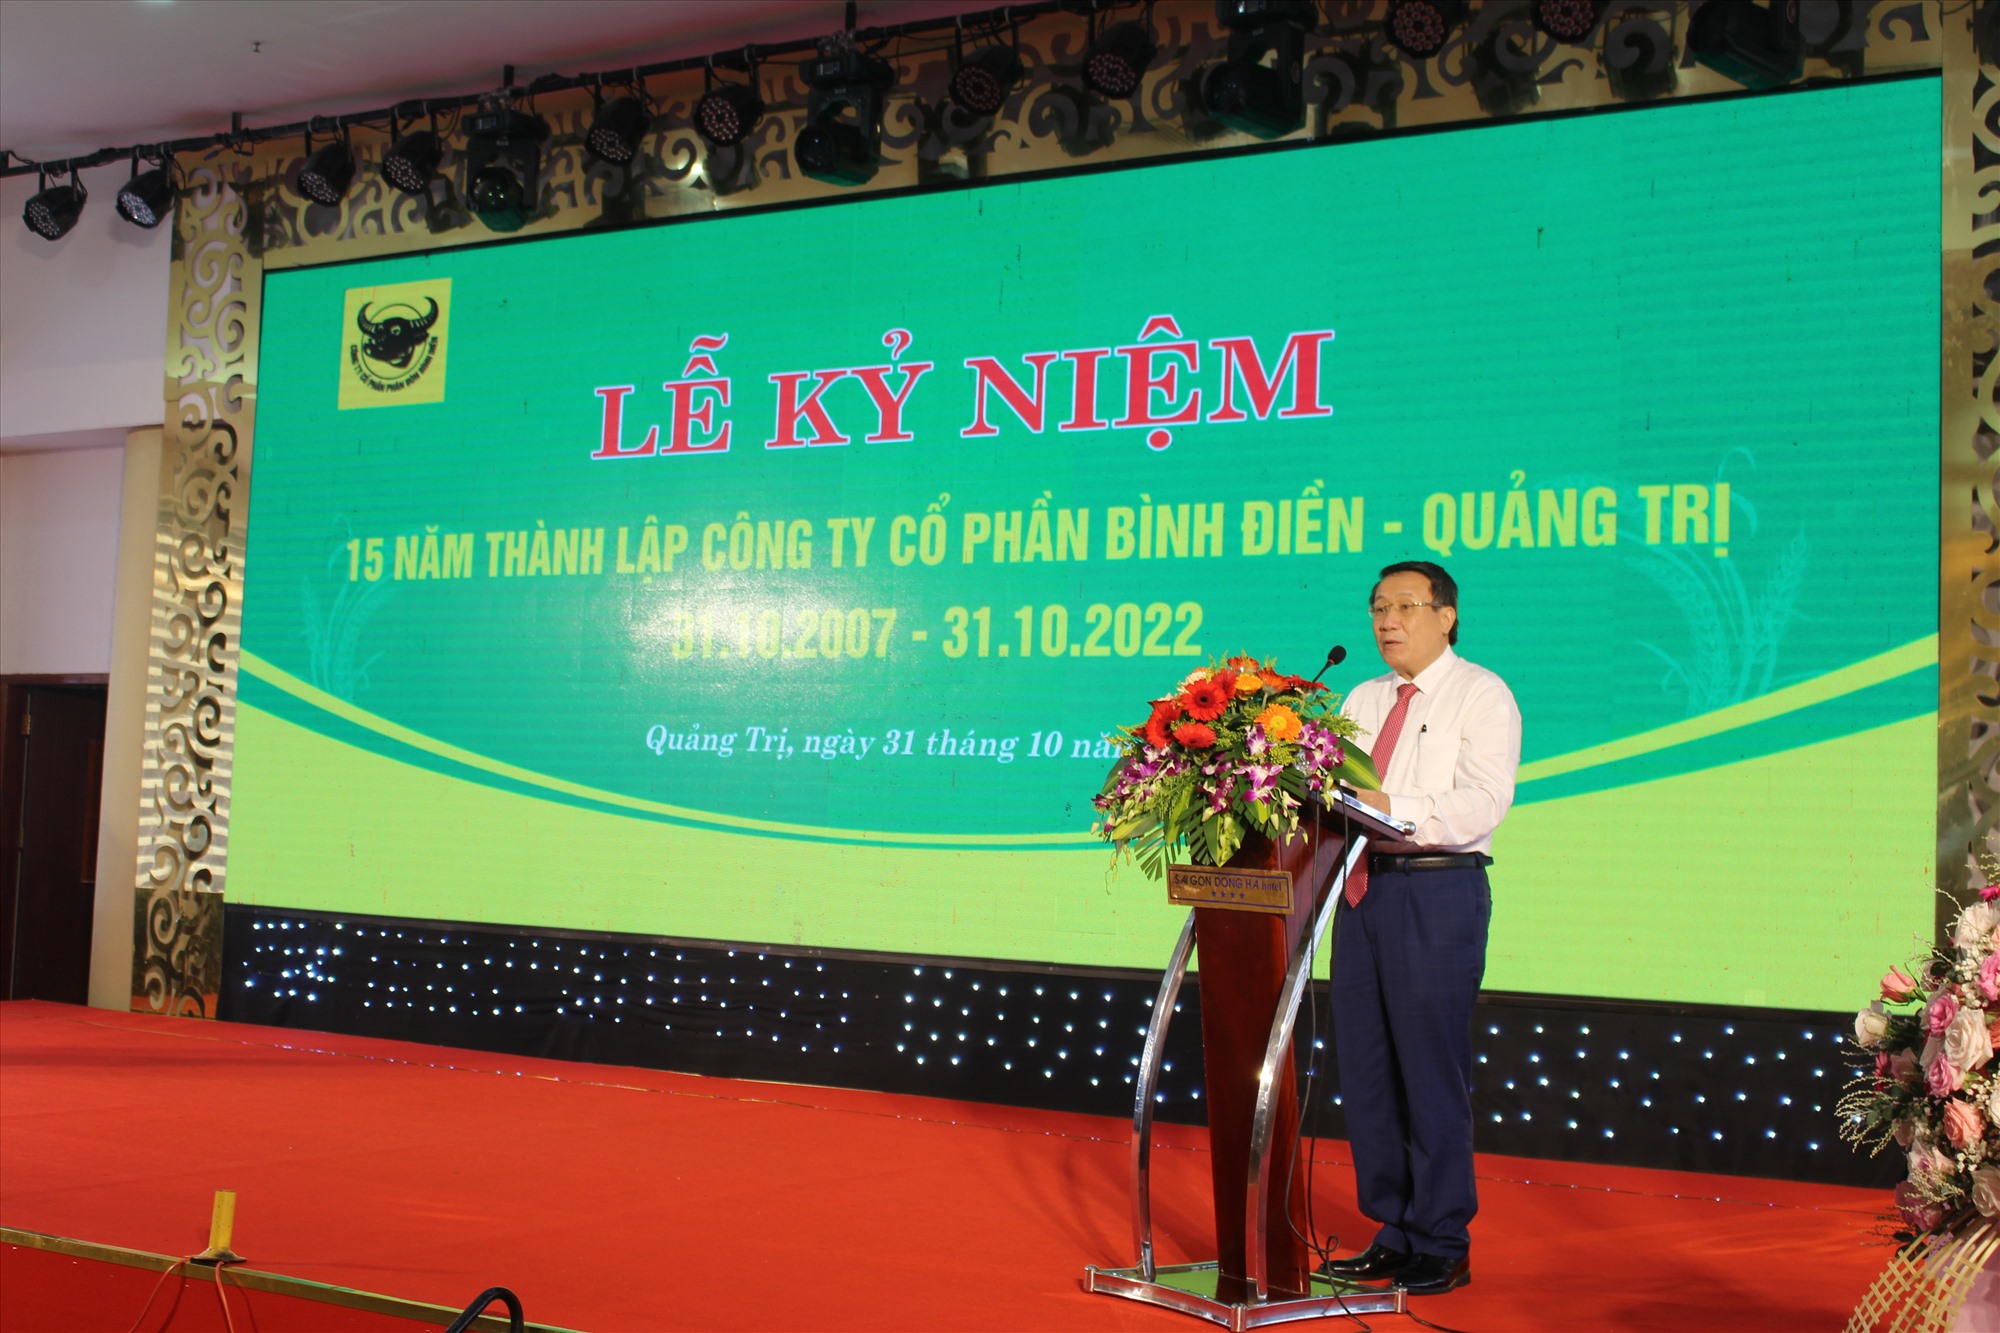 Phó Chủ tịch Thường trực UBND tỉnh Hà Sỹ Đồng phát biểu chỉ đạo tại lễ kỷ niệm - Ảnh: H.T